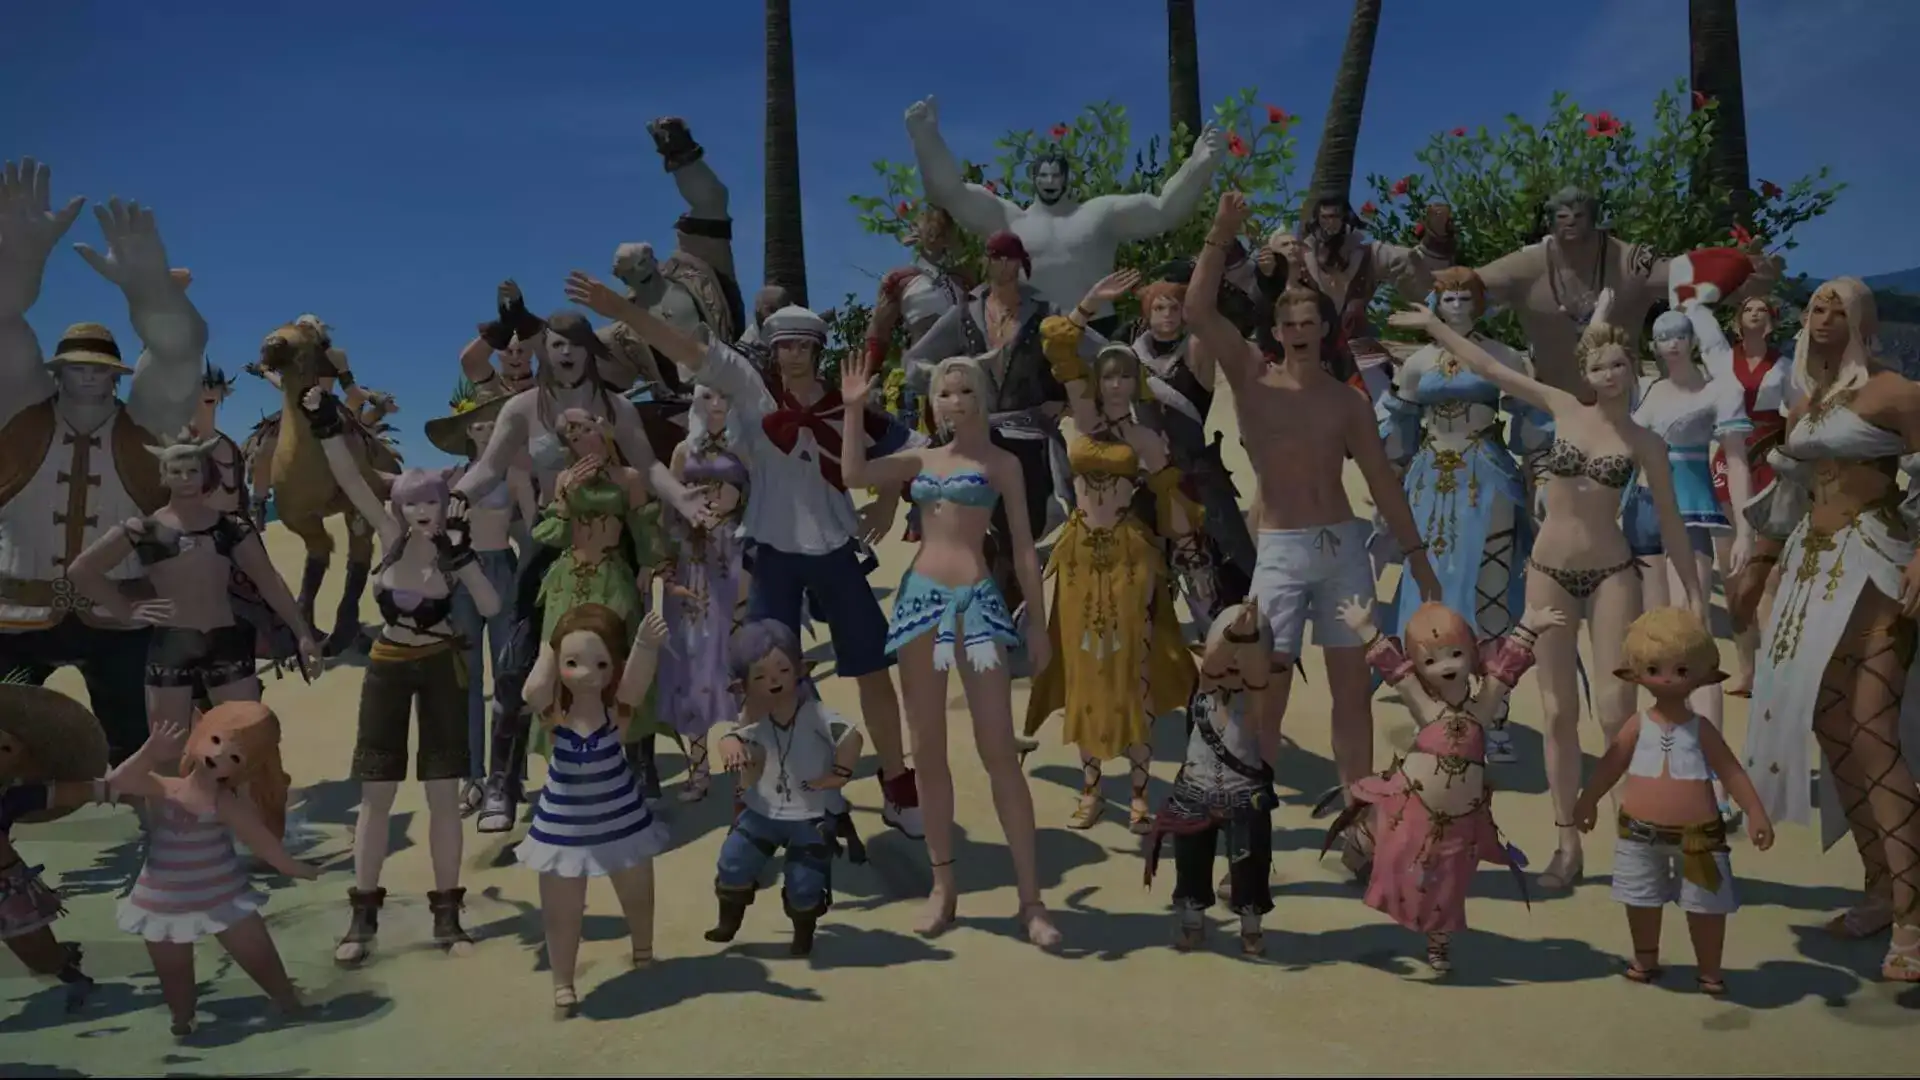 Ein Gruppenfoto vieler verschiedener Charaktere in sommerlichen Outfits, die an einem Sandstrand versammelt sind und dem Betrachtenden zuwinken.